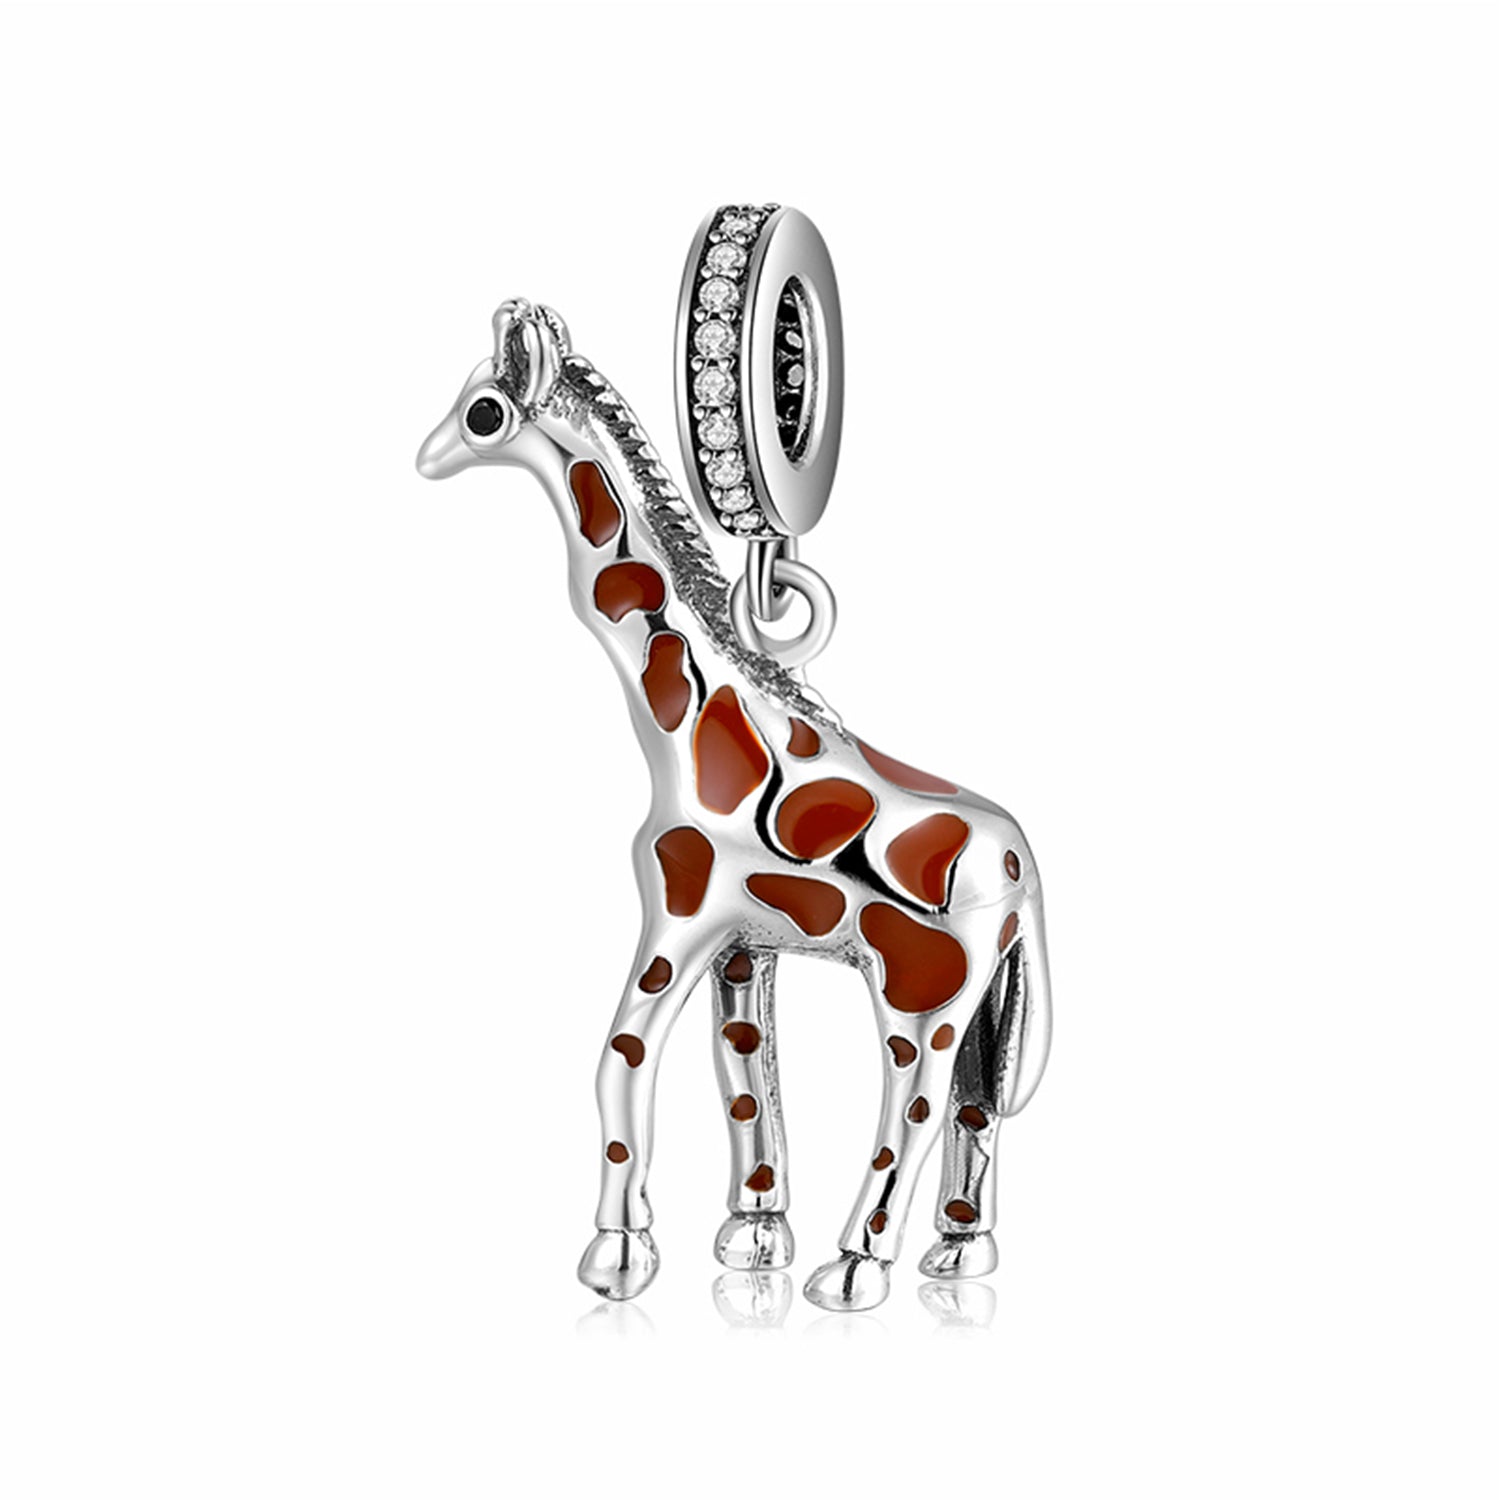 Giraffe with zirconia